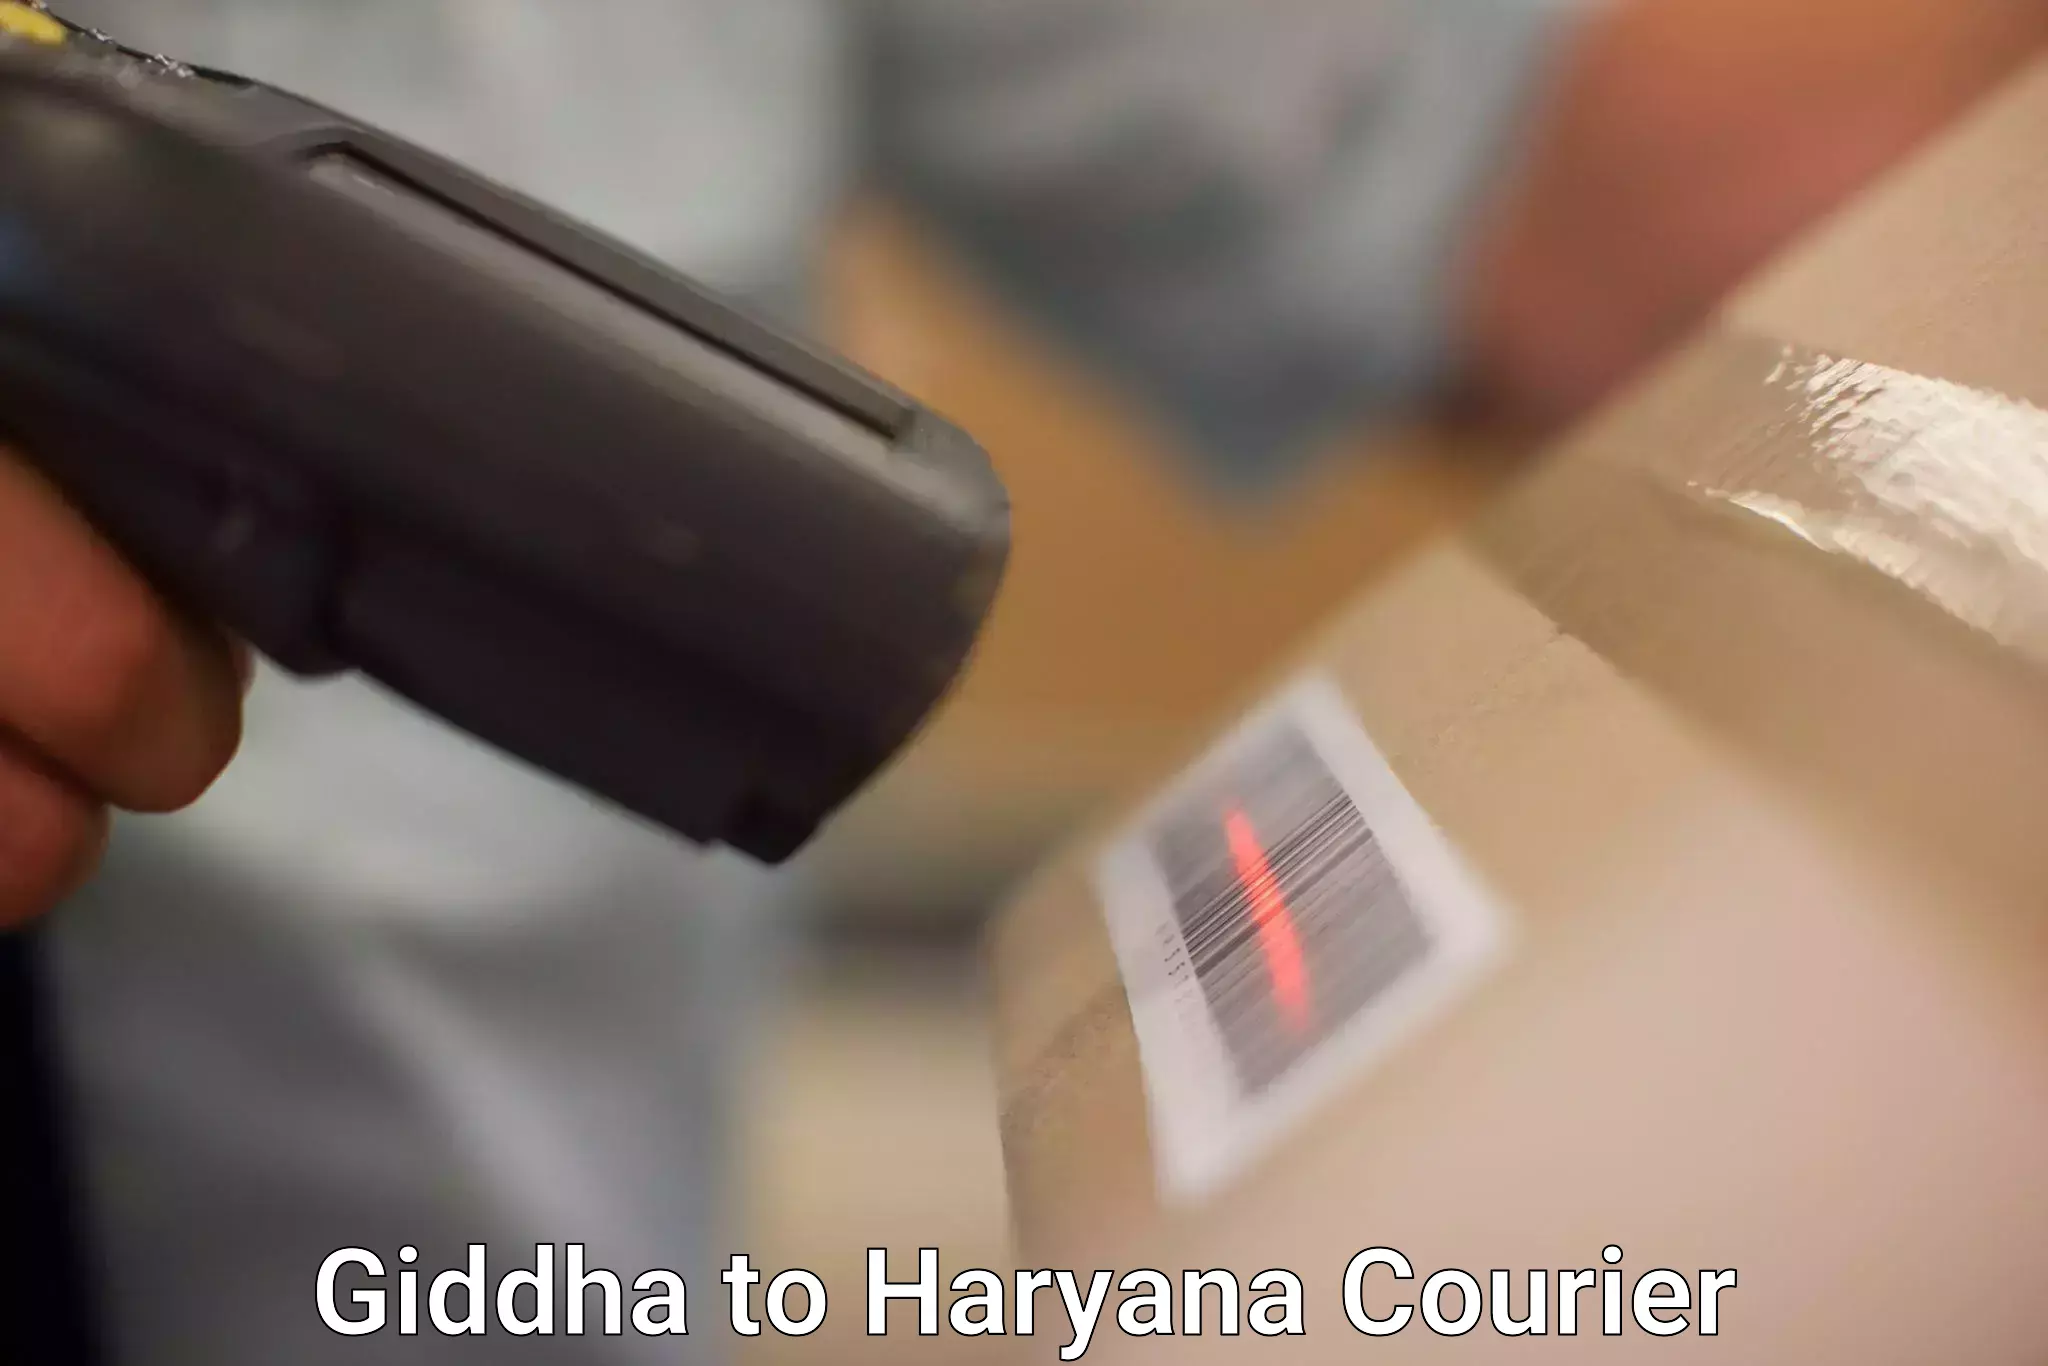 On-demand courier Giddha to Haryana